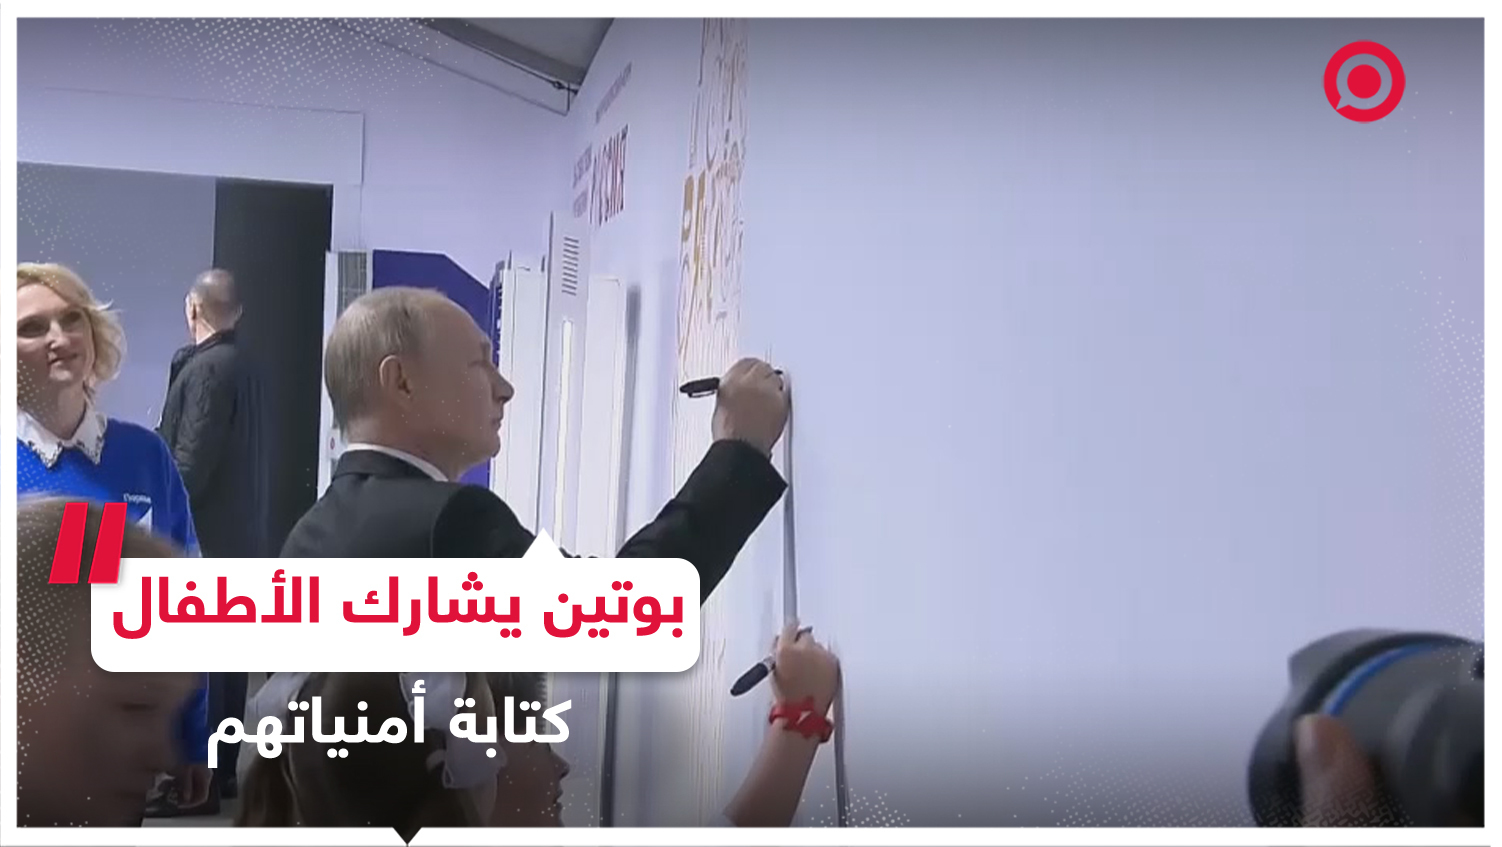 الرئيس الروسي صحبة الأطفال في معرض "روسيا" يكتبون أمنياتهم